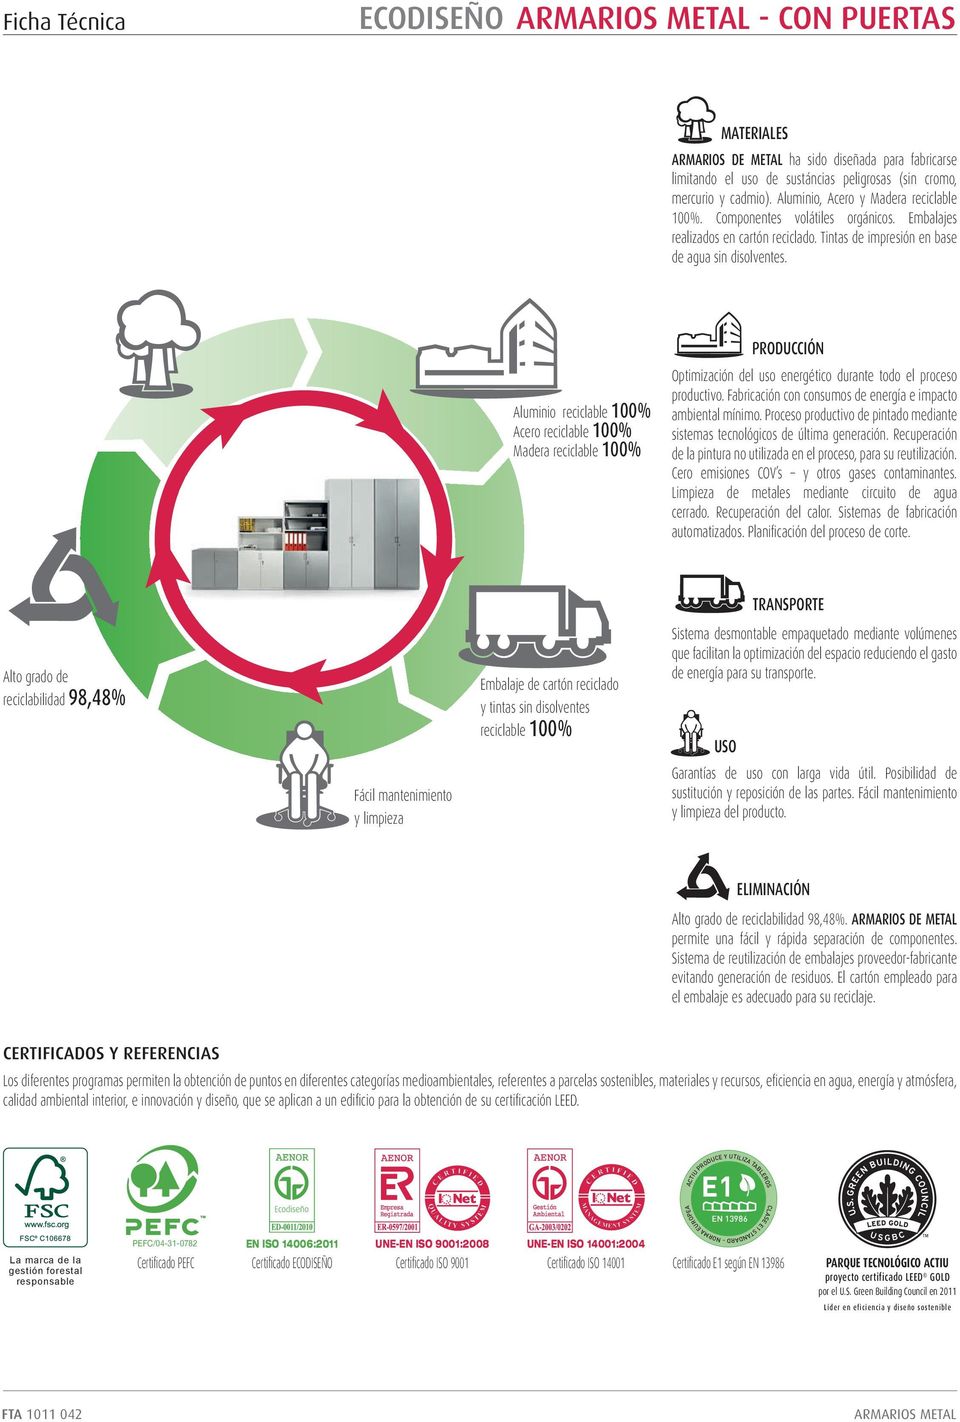 Aluminio reciclable 00% Acero reciclable 00% Madera reciclable 00% PRODUCCIÓN Optimización del uso energético durante todo el proceso productivo.